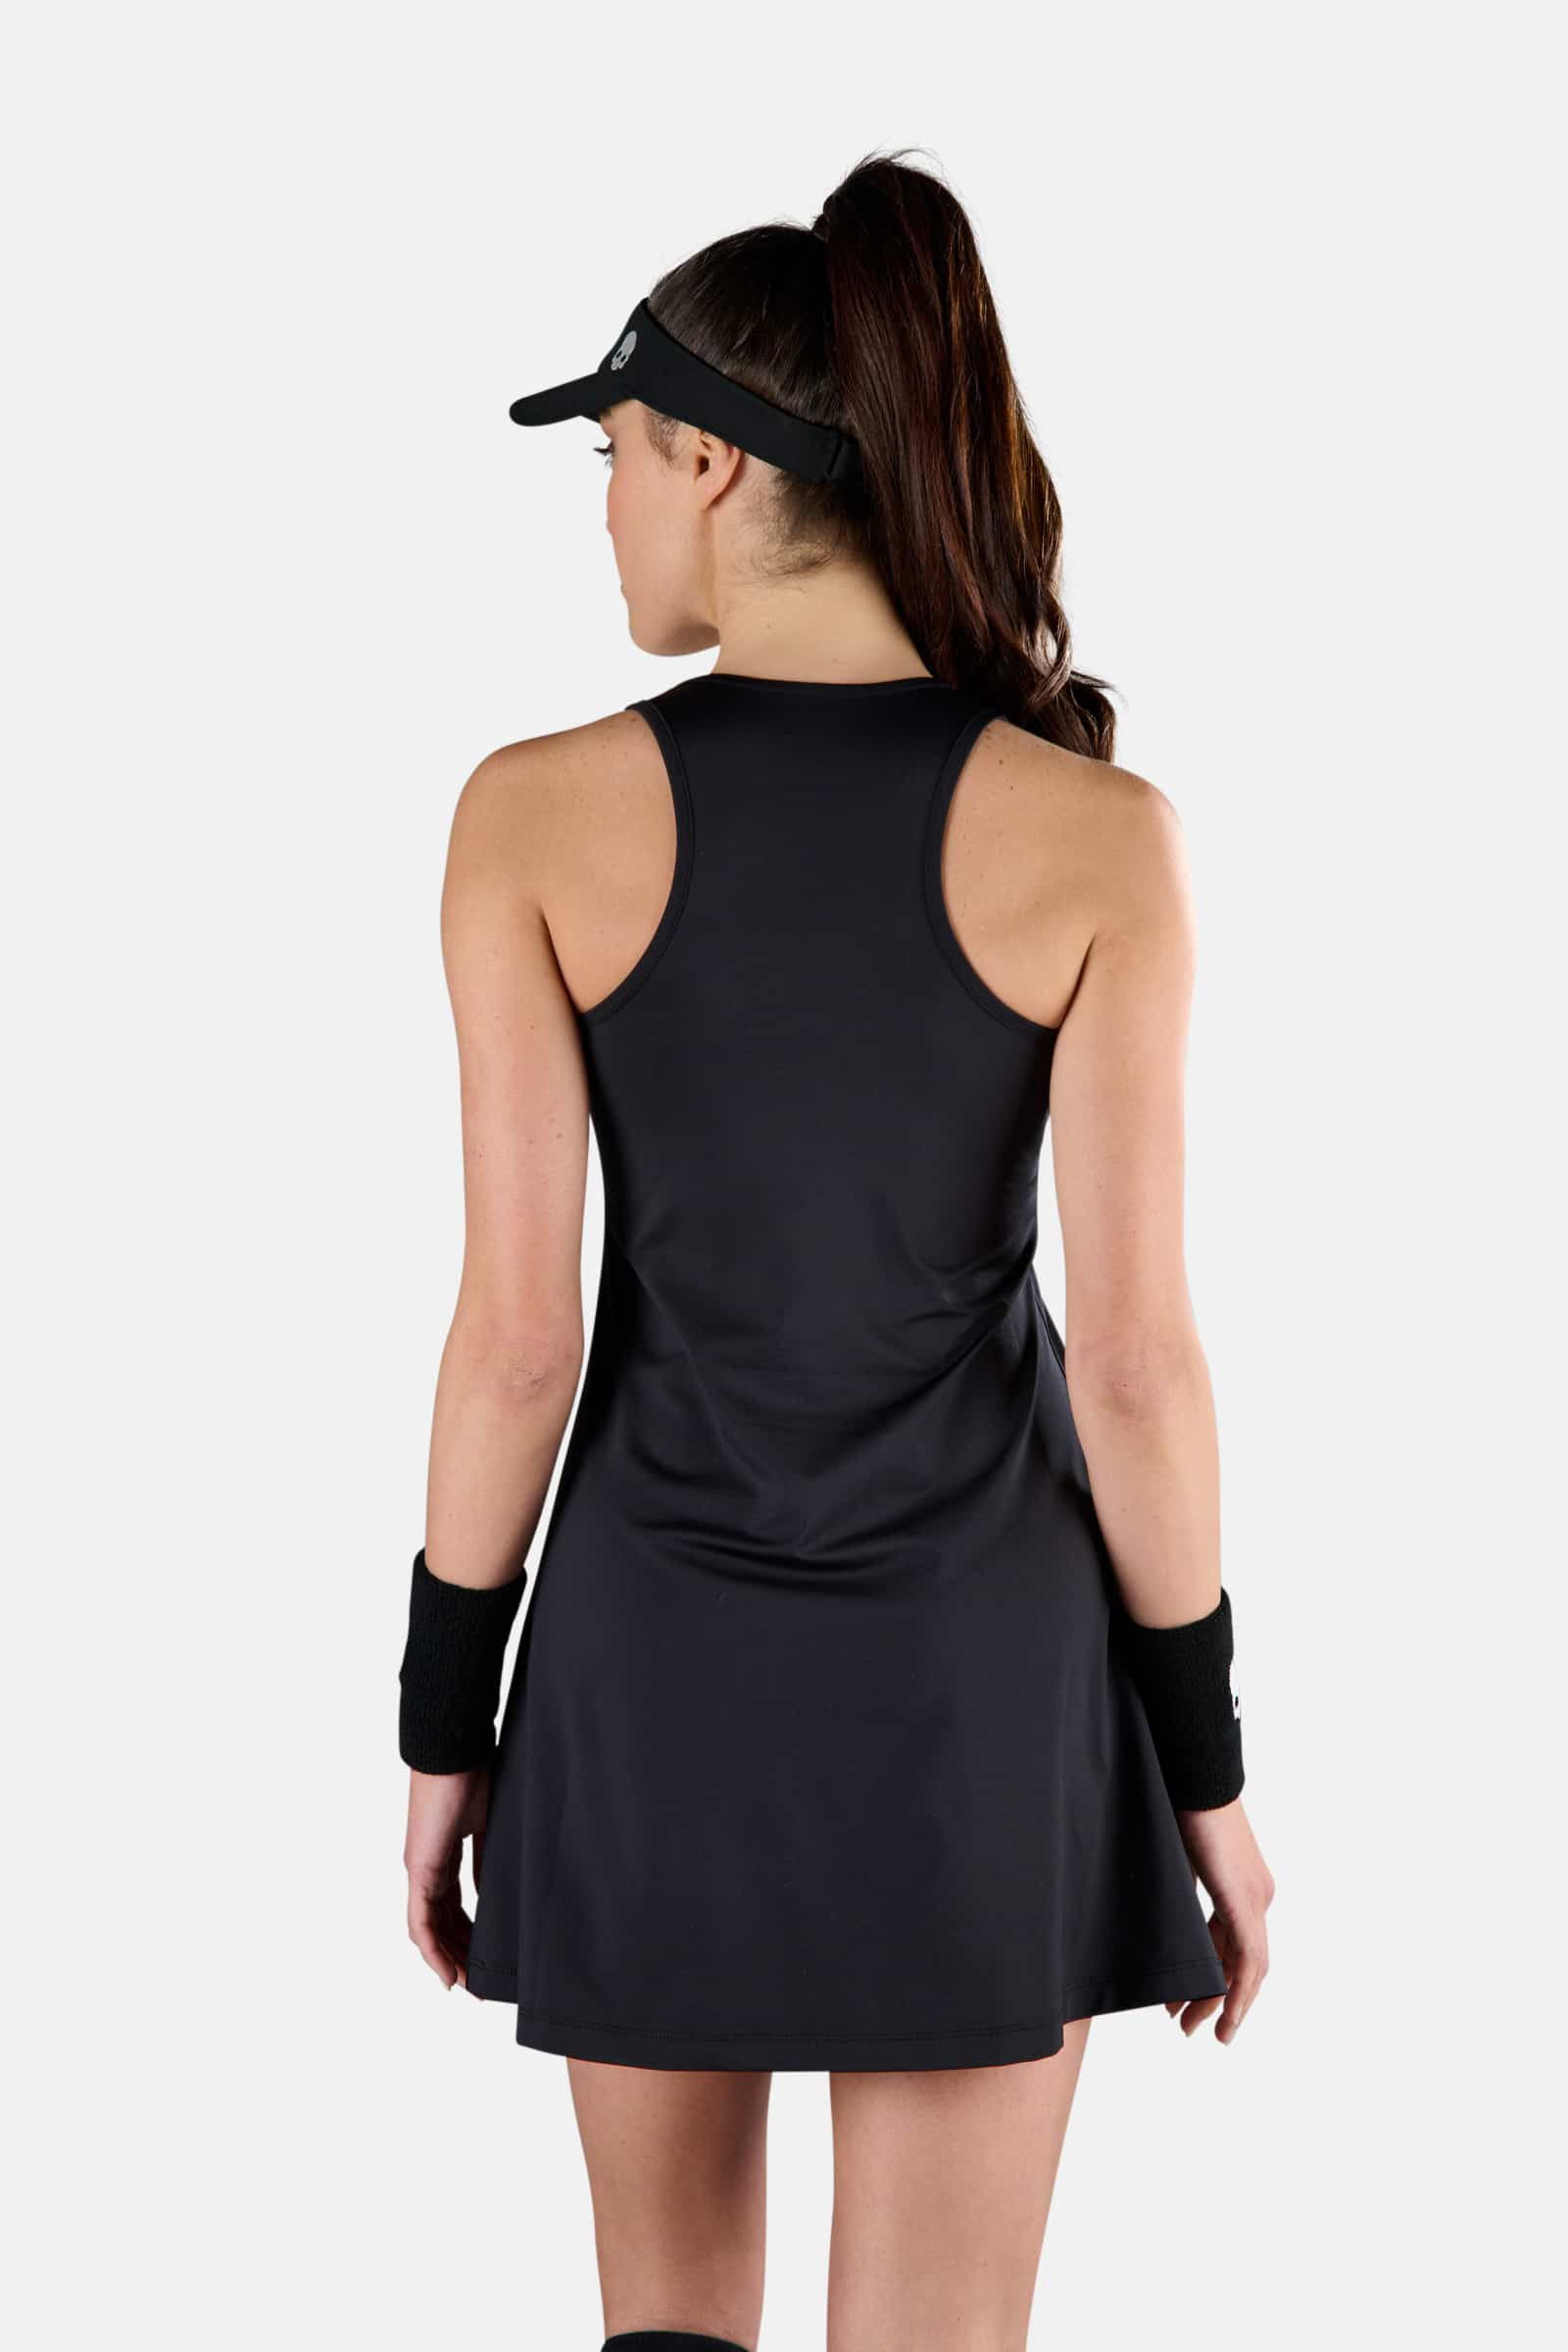 TECH DRESS - BLACK - Hydrogen - Luxury Sportwear